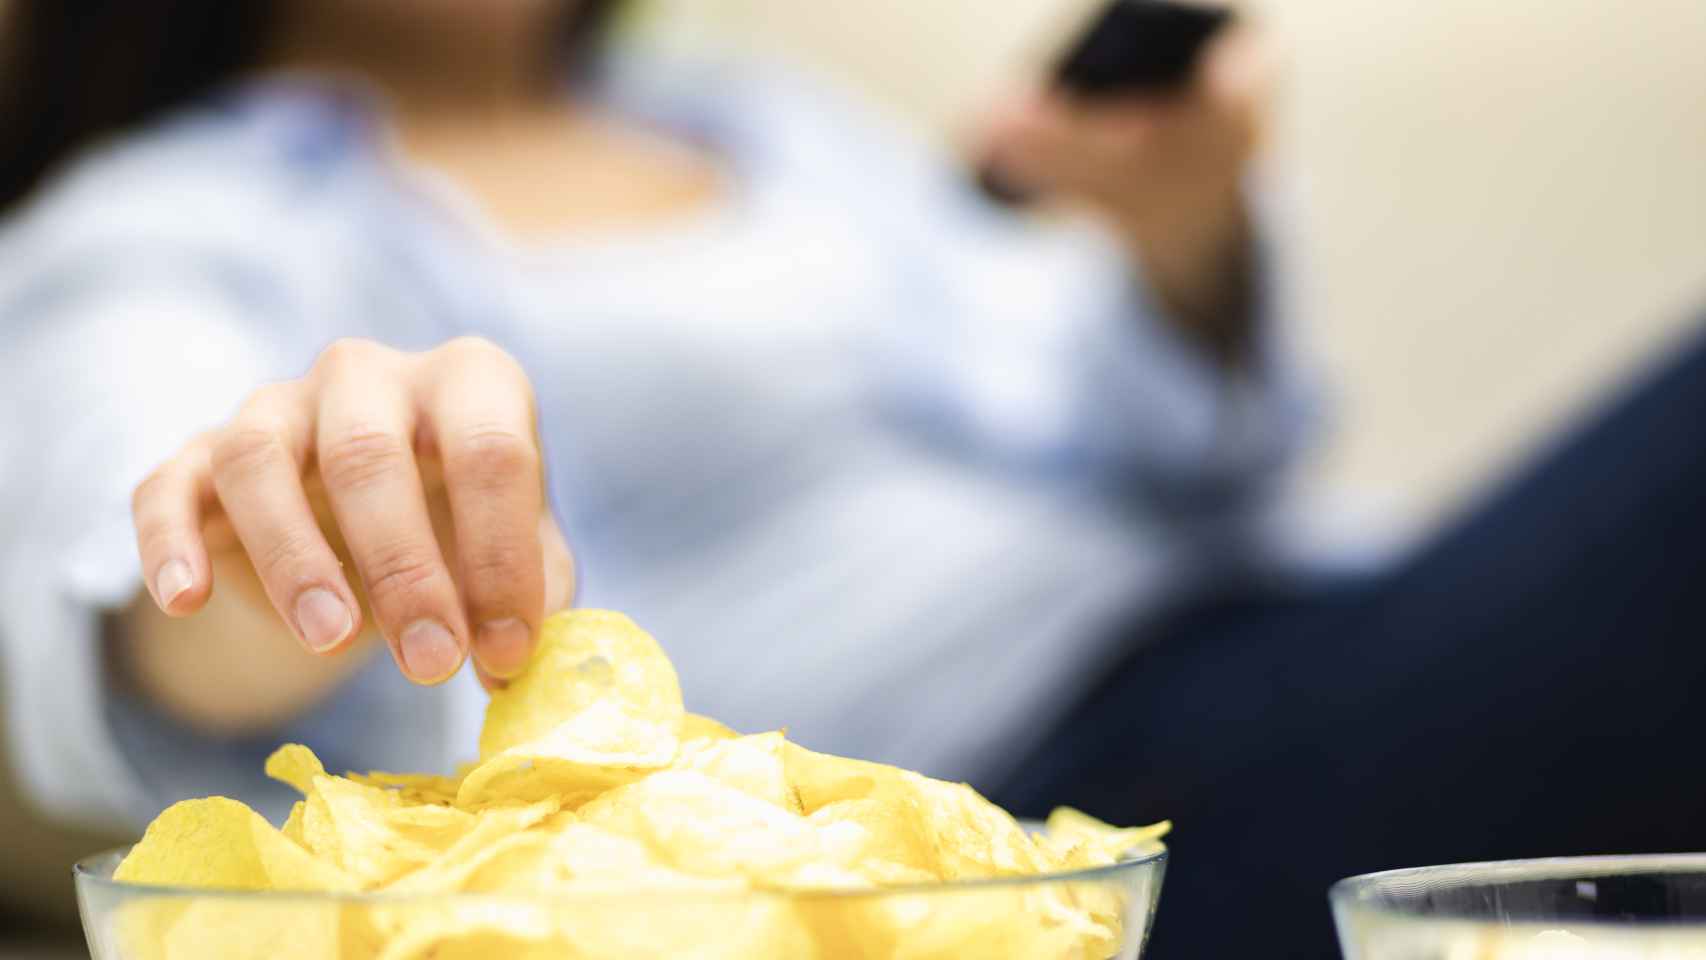 Una mujer toma patatas fritas mientras consulta su móvil.